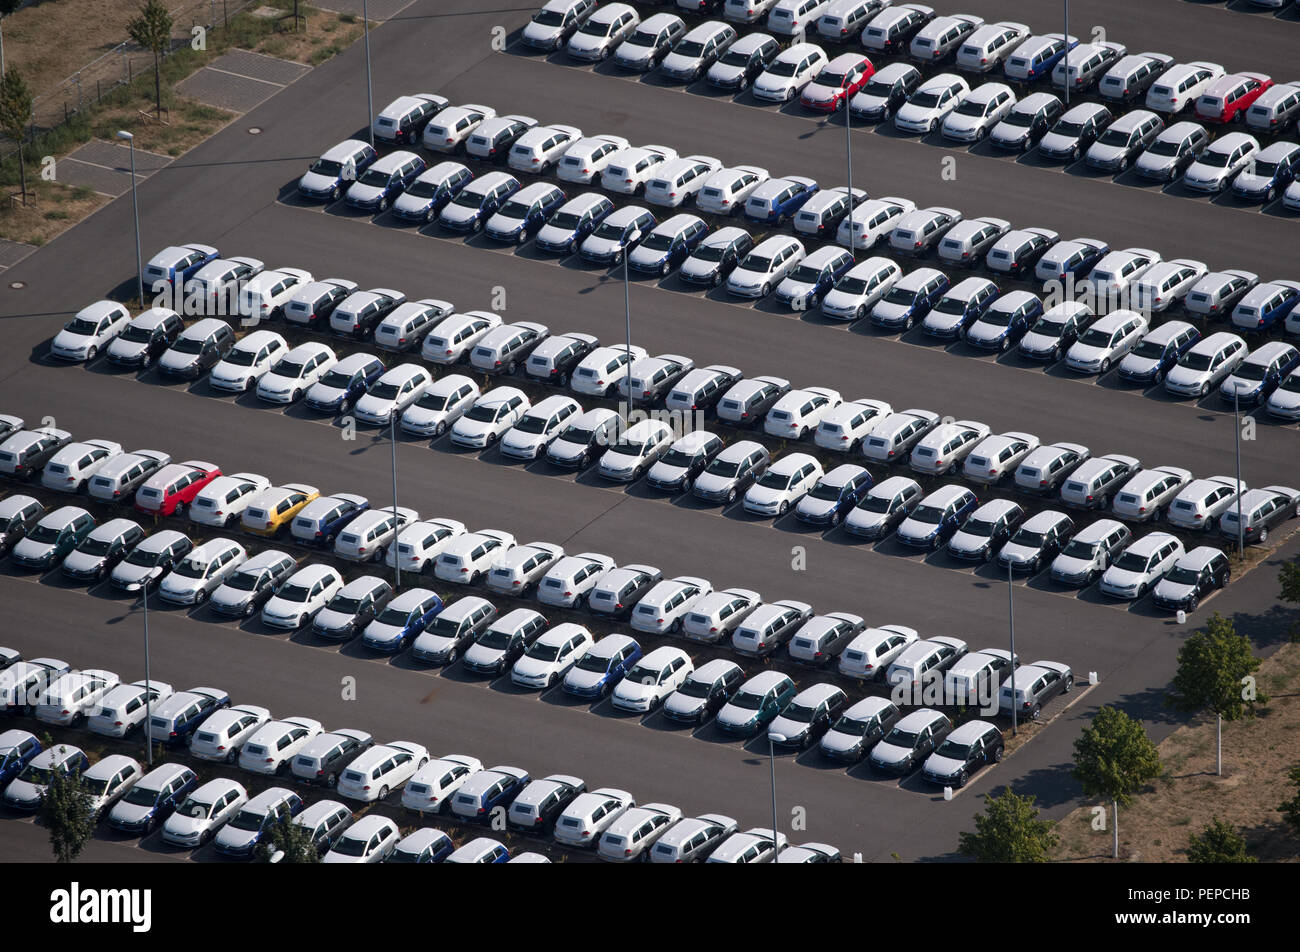 Avto 1000. 1000 Машин. Организация расстановки машин на 1000 штук. Moto parking Volkswagen. Стоянки отозванных Фольксваген в США из за co.